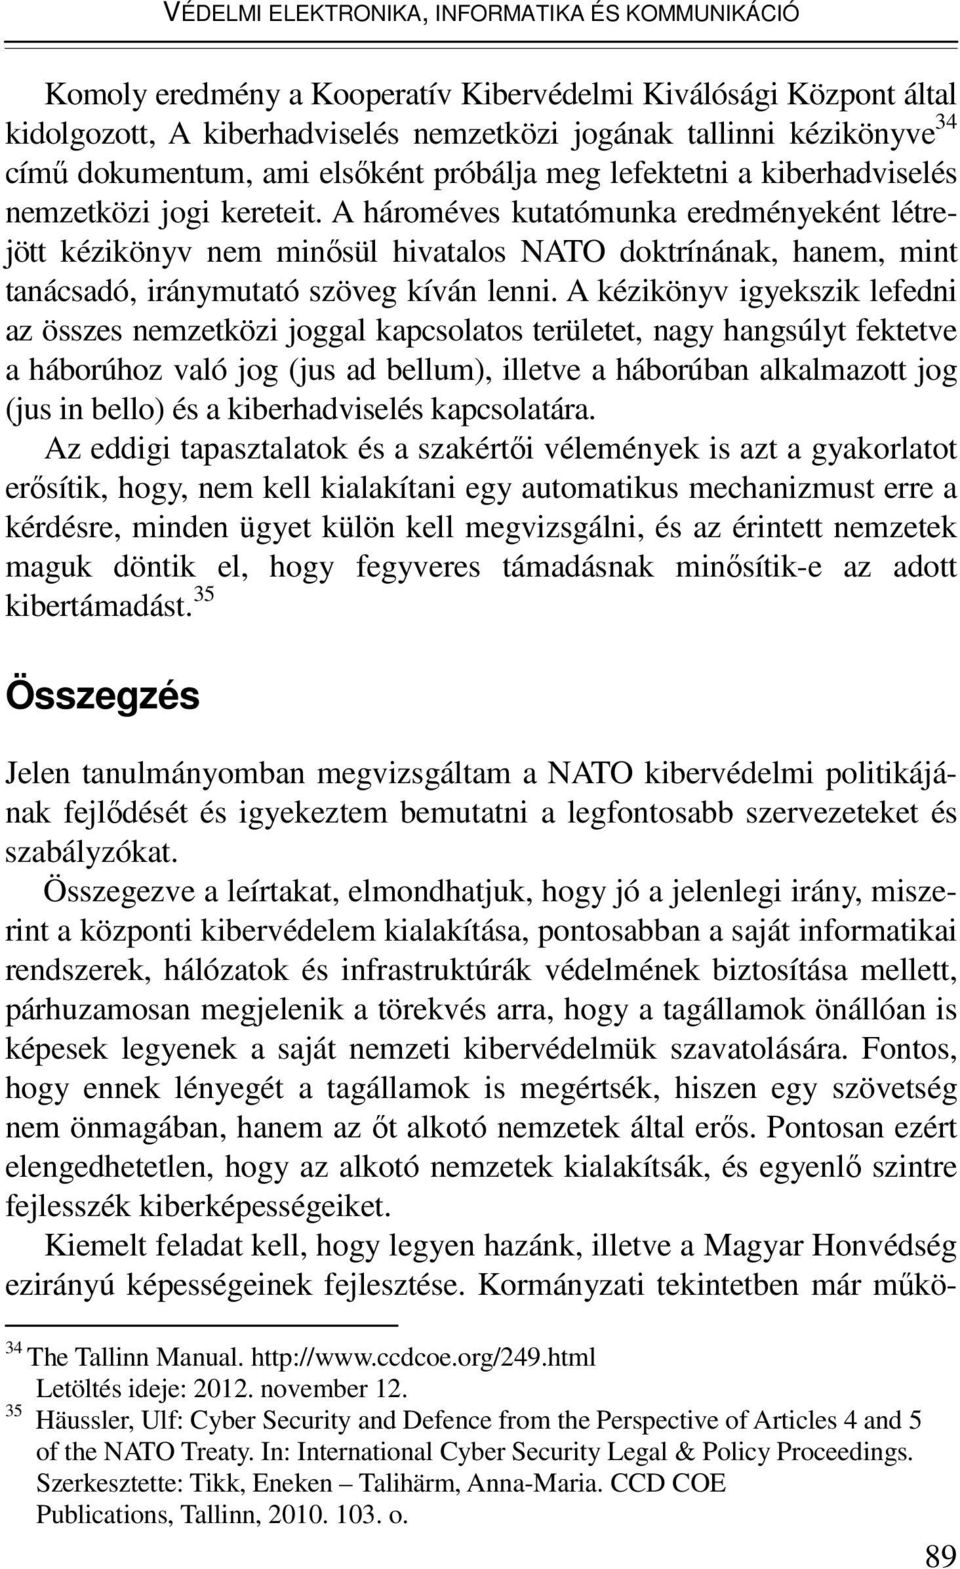 A hároméves kutatómunka eredményeként létrejött kézikönyv nem minősül hivatalos NATO doktrínának, hanem, mint tanácsadó, iránymutató szöveg kíván lenni.